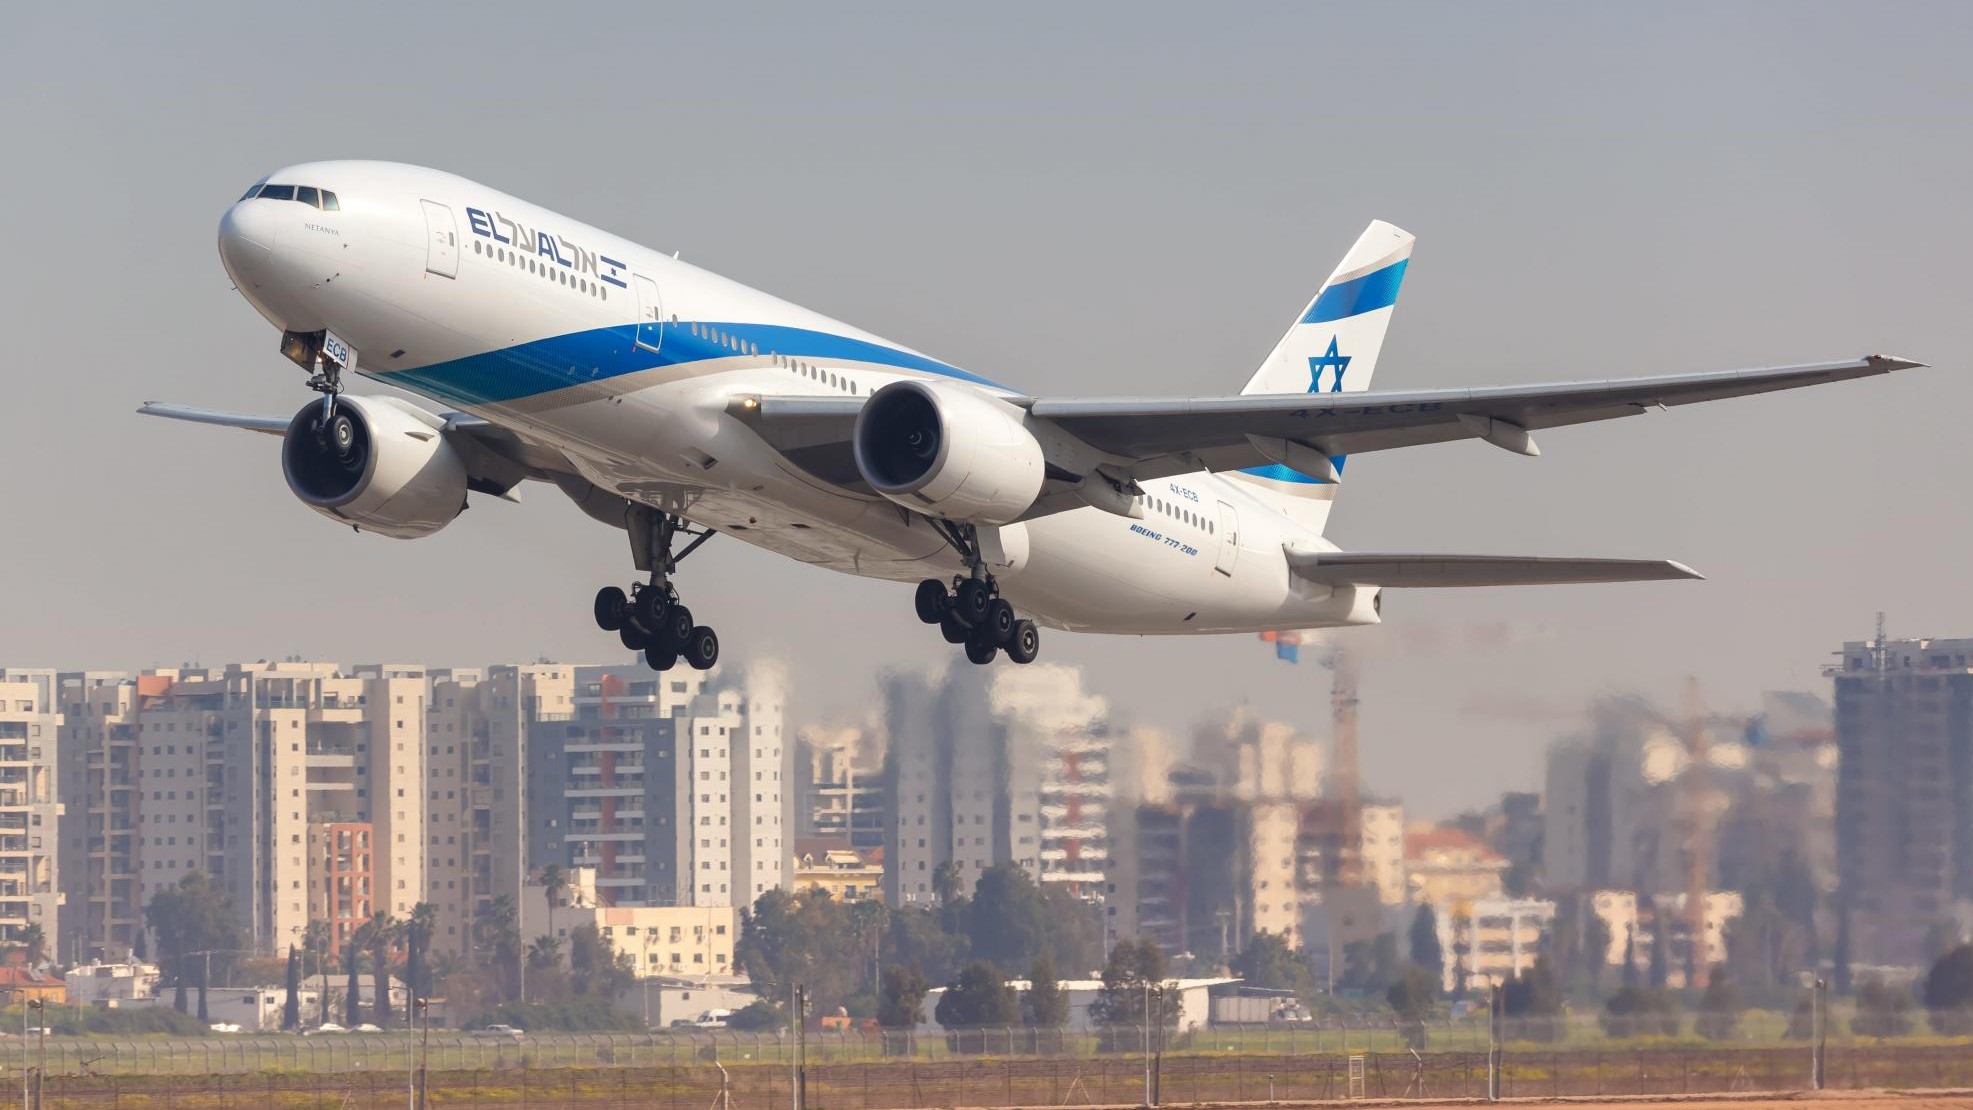 Рейс эль аль. Тель Авив с самолета. Авиакомпания Израиля Эль Аль. Боинг 777-200 Эль Аль. Боинг 787 авиакомпании Israel.